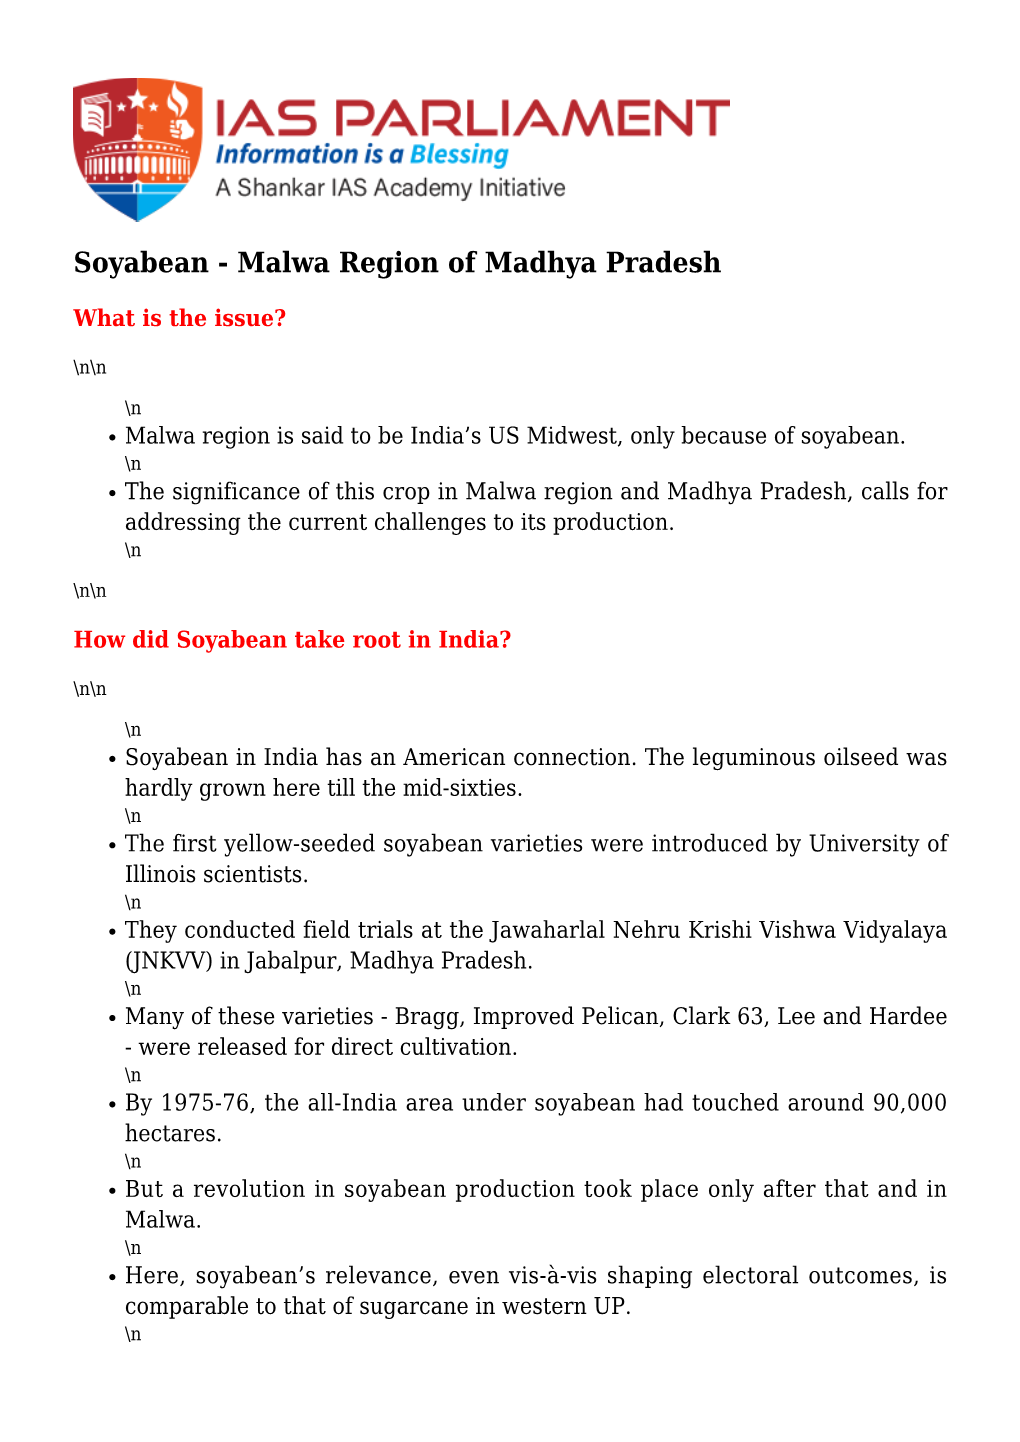 Soyabean - Malwa Region of Madhya Pradesh